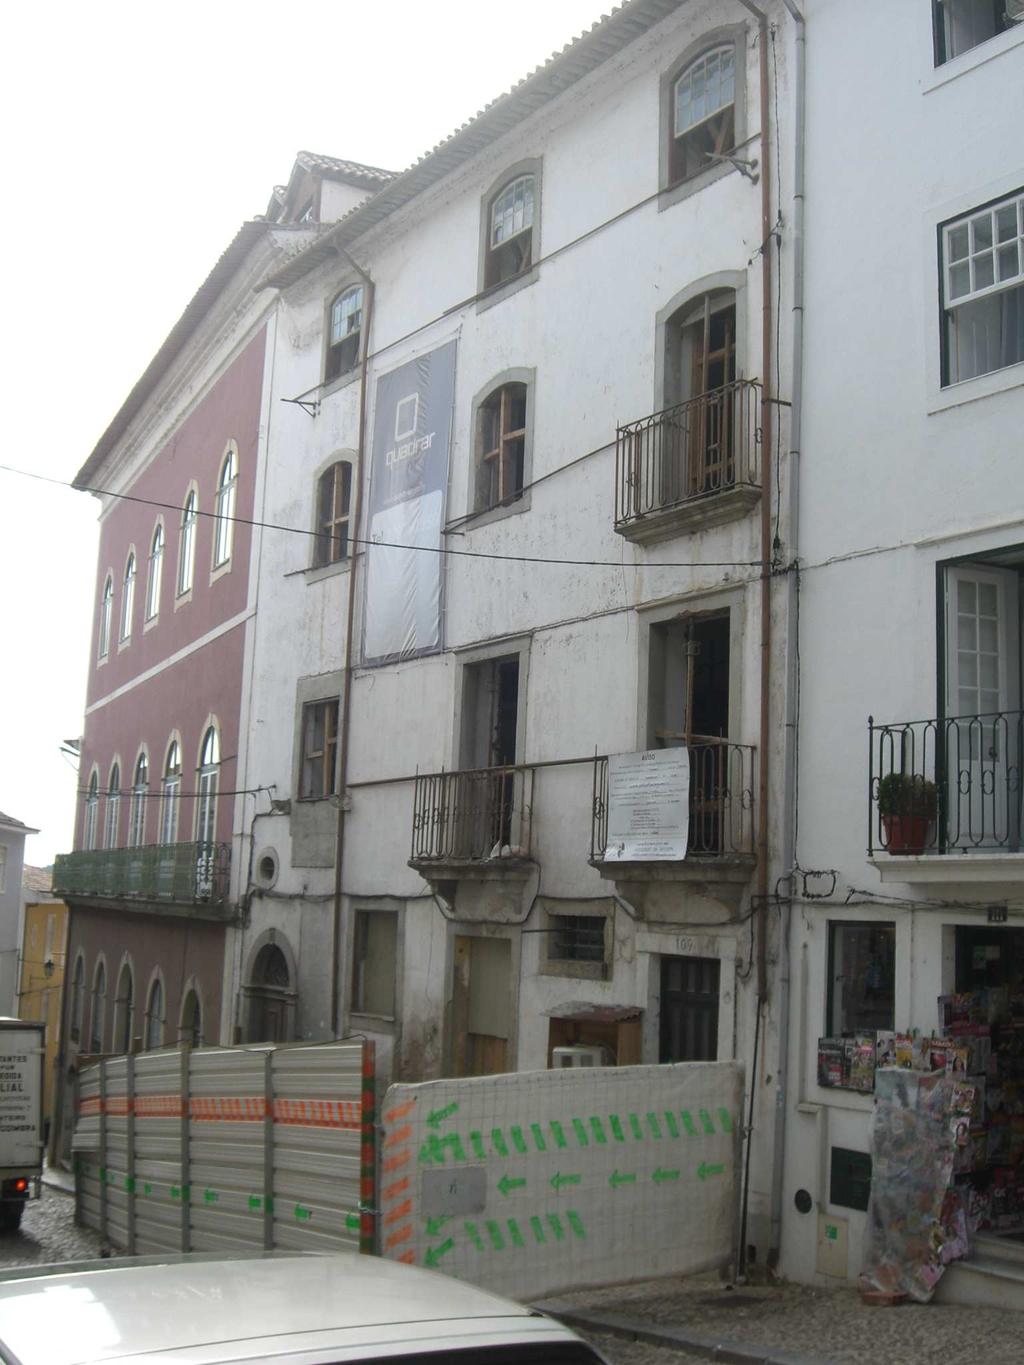 FICHA DE INVENTÁRIO 1.IDENTIFICAÇÃO Designação- Imóvel Local/Endereço- Couraça de Lisboa, nº105 a 109 Freguesia- Almedina Concelho- Coimbra Distrito- Coimbra 2.